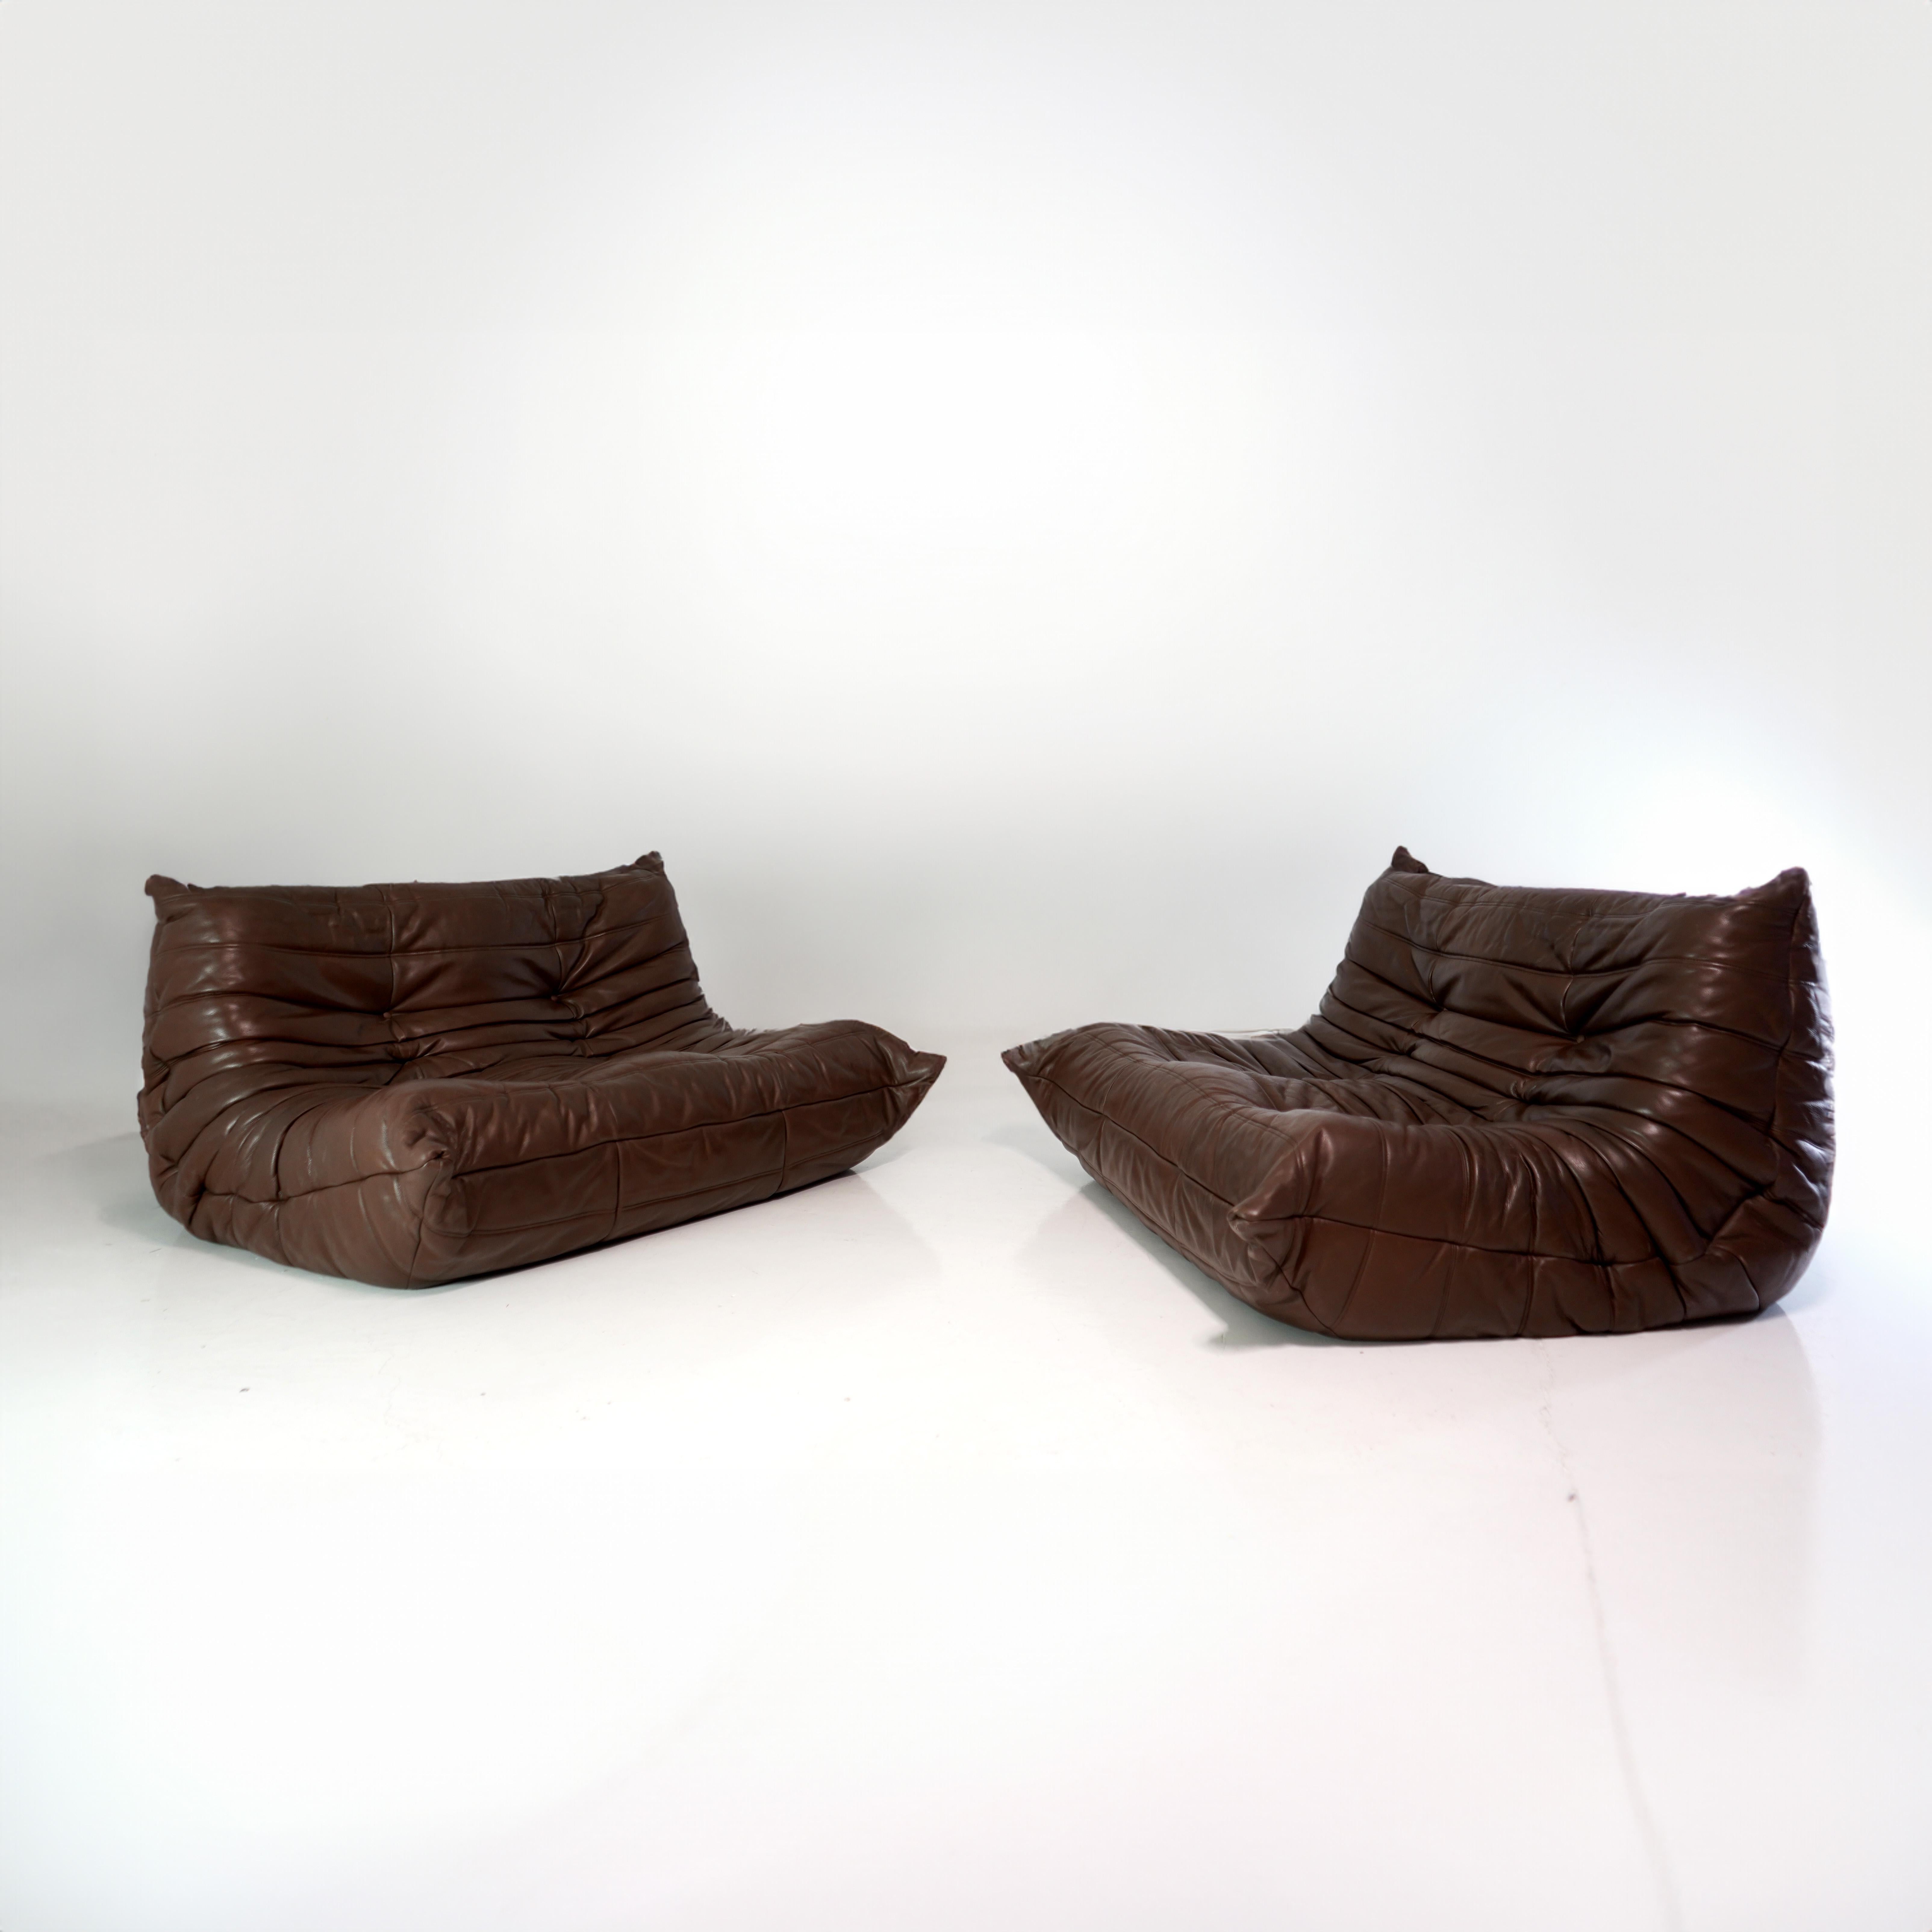 Togo vintage sofa in brown leather by Michel Ducaroy for Ligne Roset,  France 1973